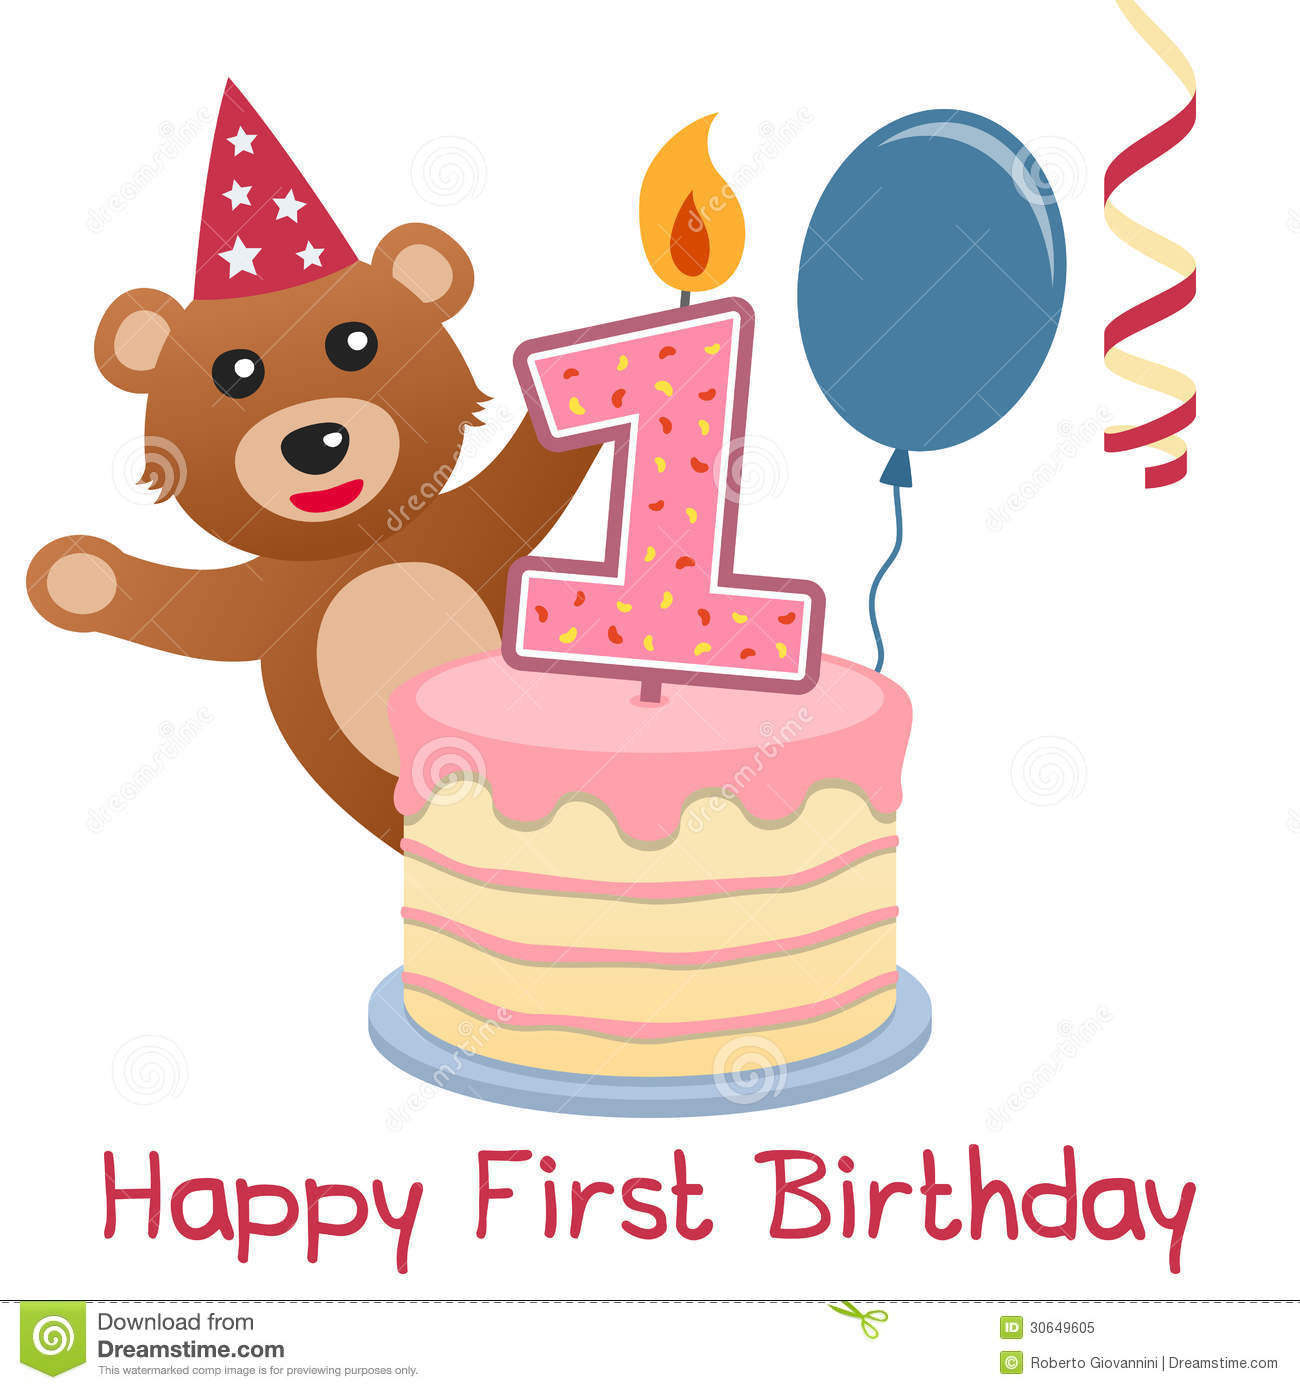 Happy First Birthday Greeting Card With A Cute Teddy Bear A Birthday